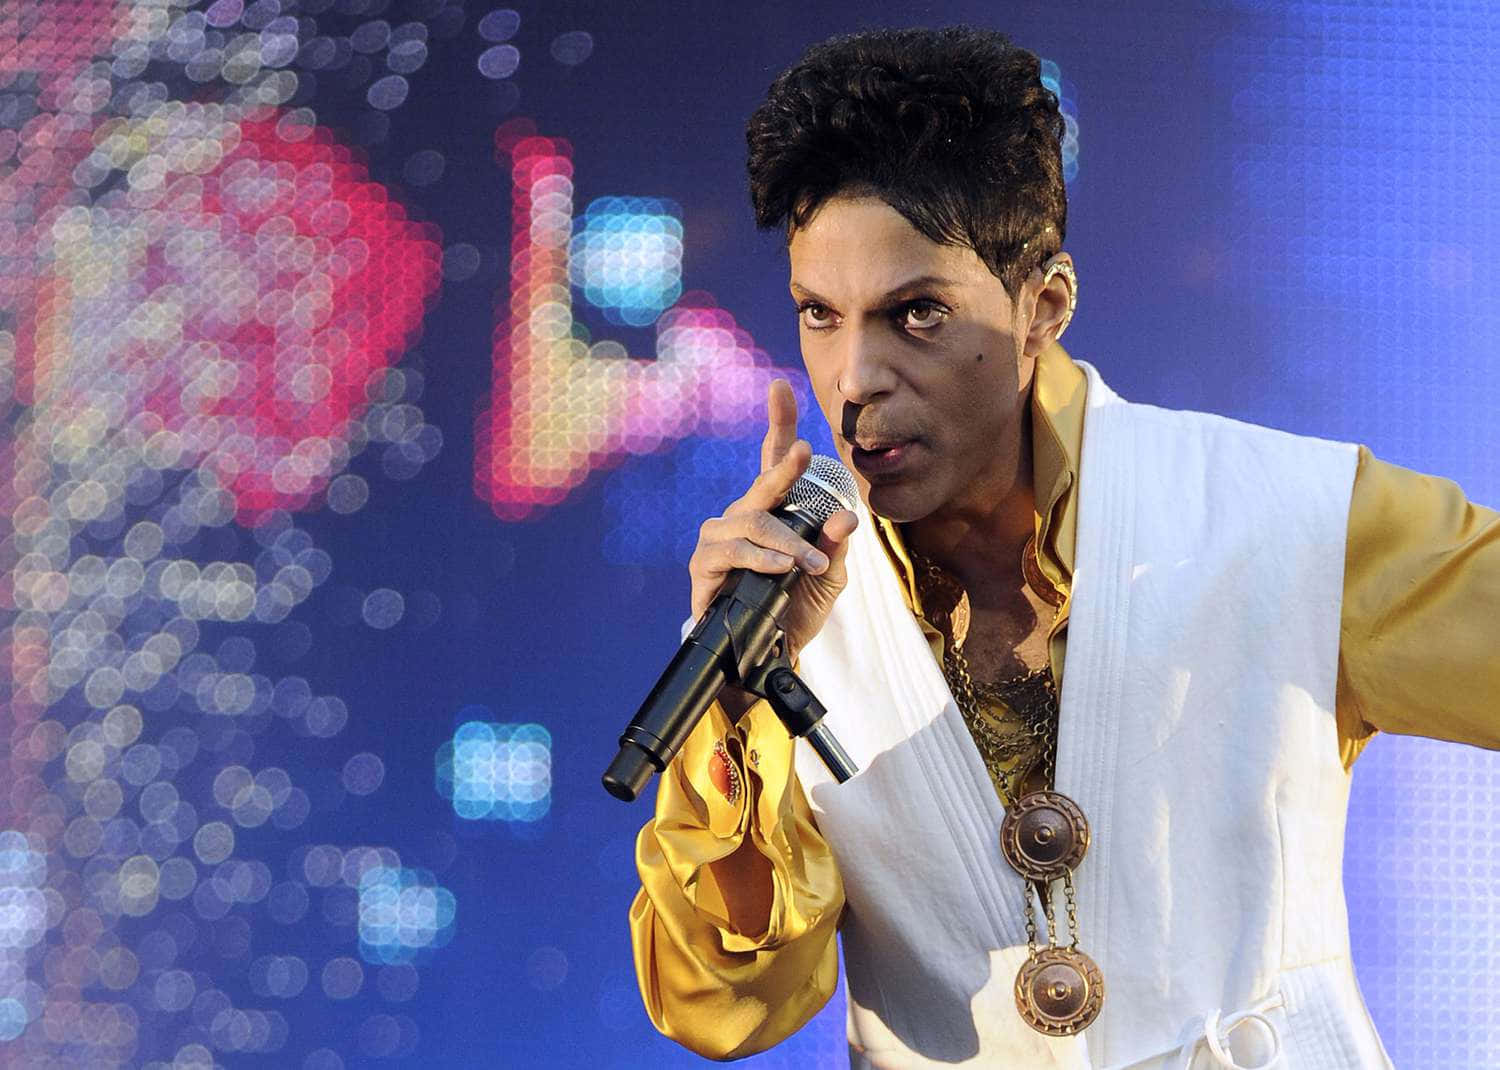 Fejrarven Efter Musik-ikonet, Prince.